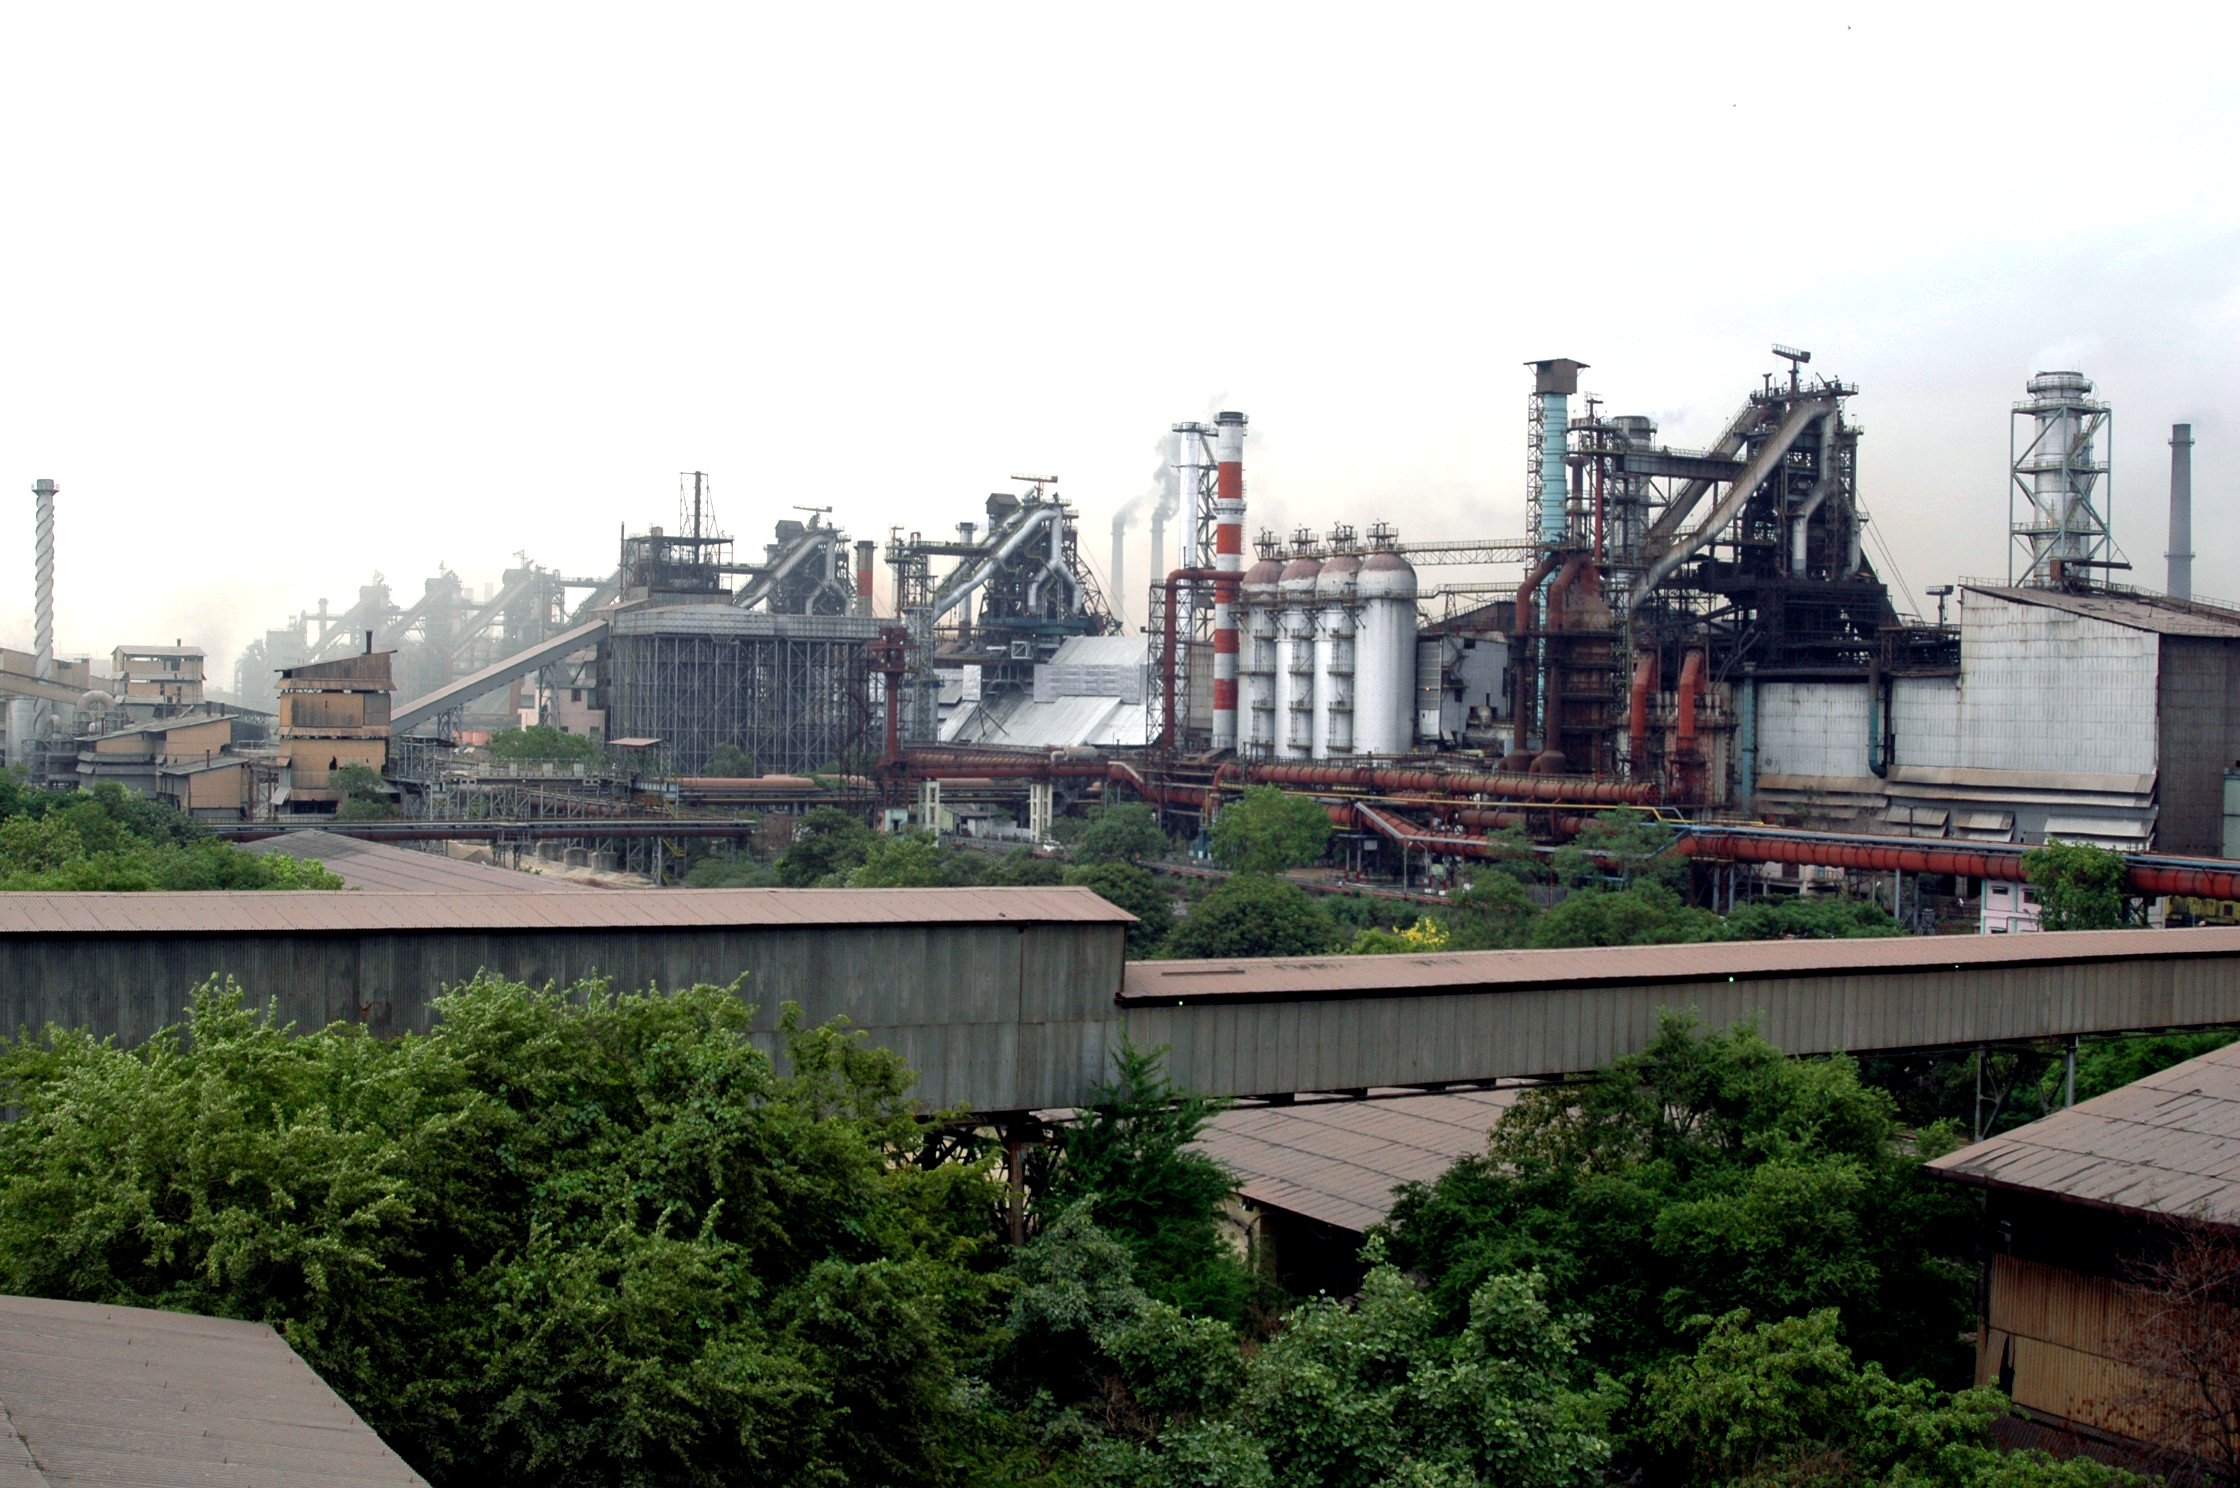 Le syndicat communiste (CITU) remporte les élections dans la principale usine productrice d'acier